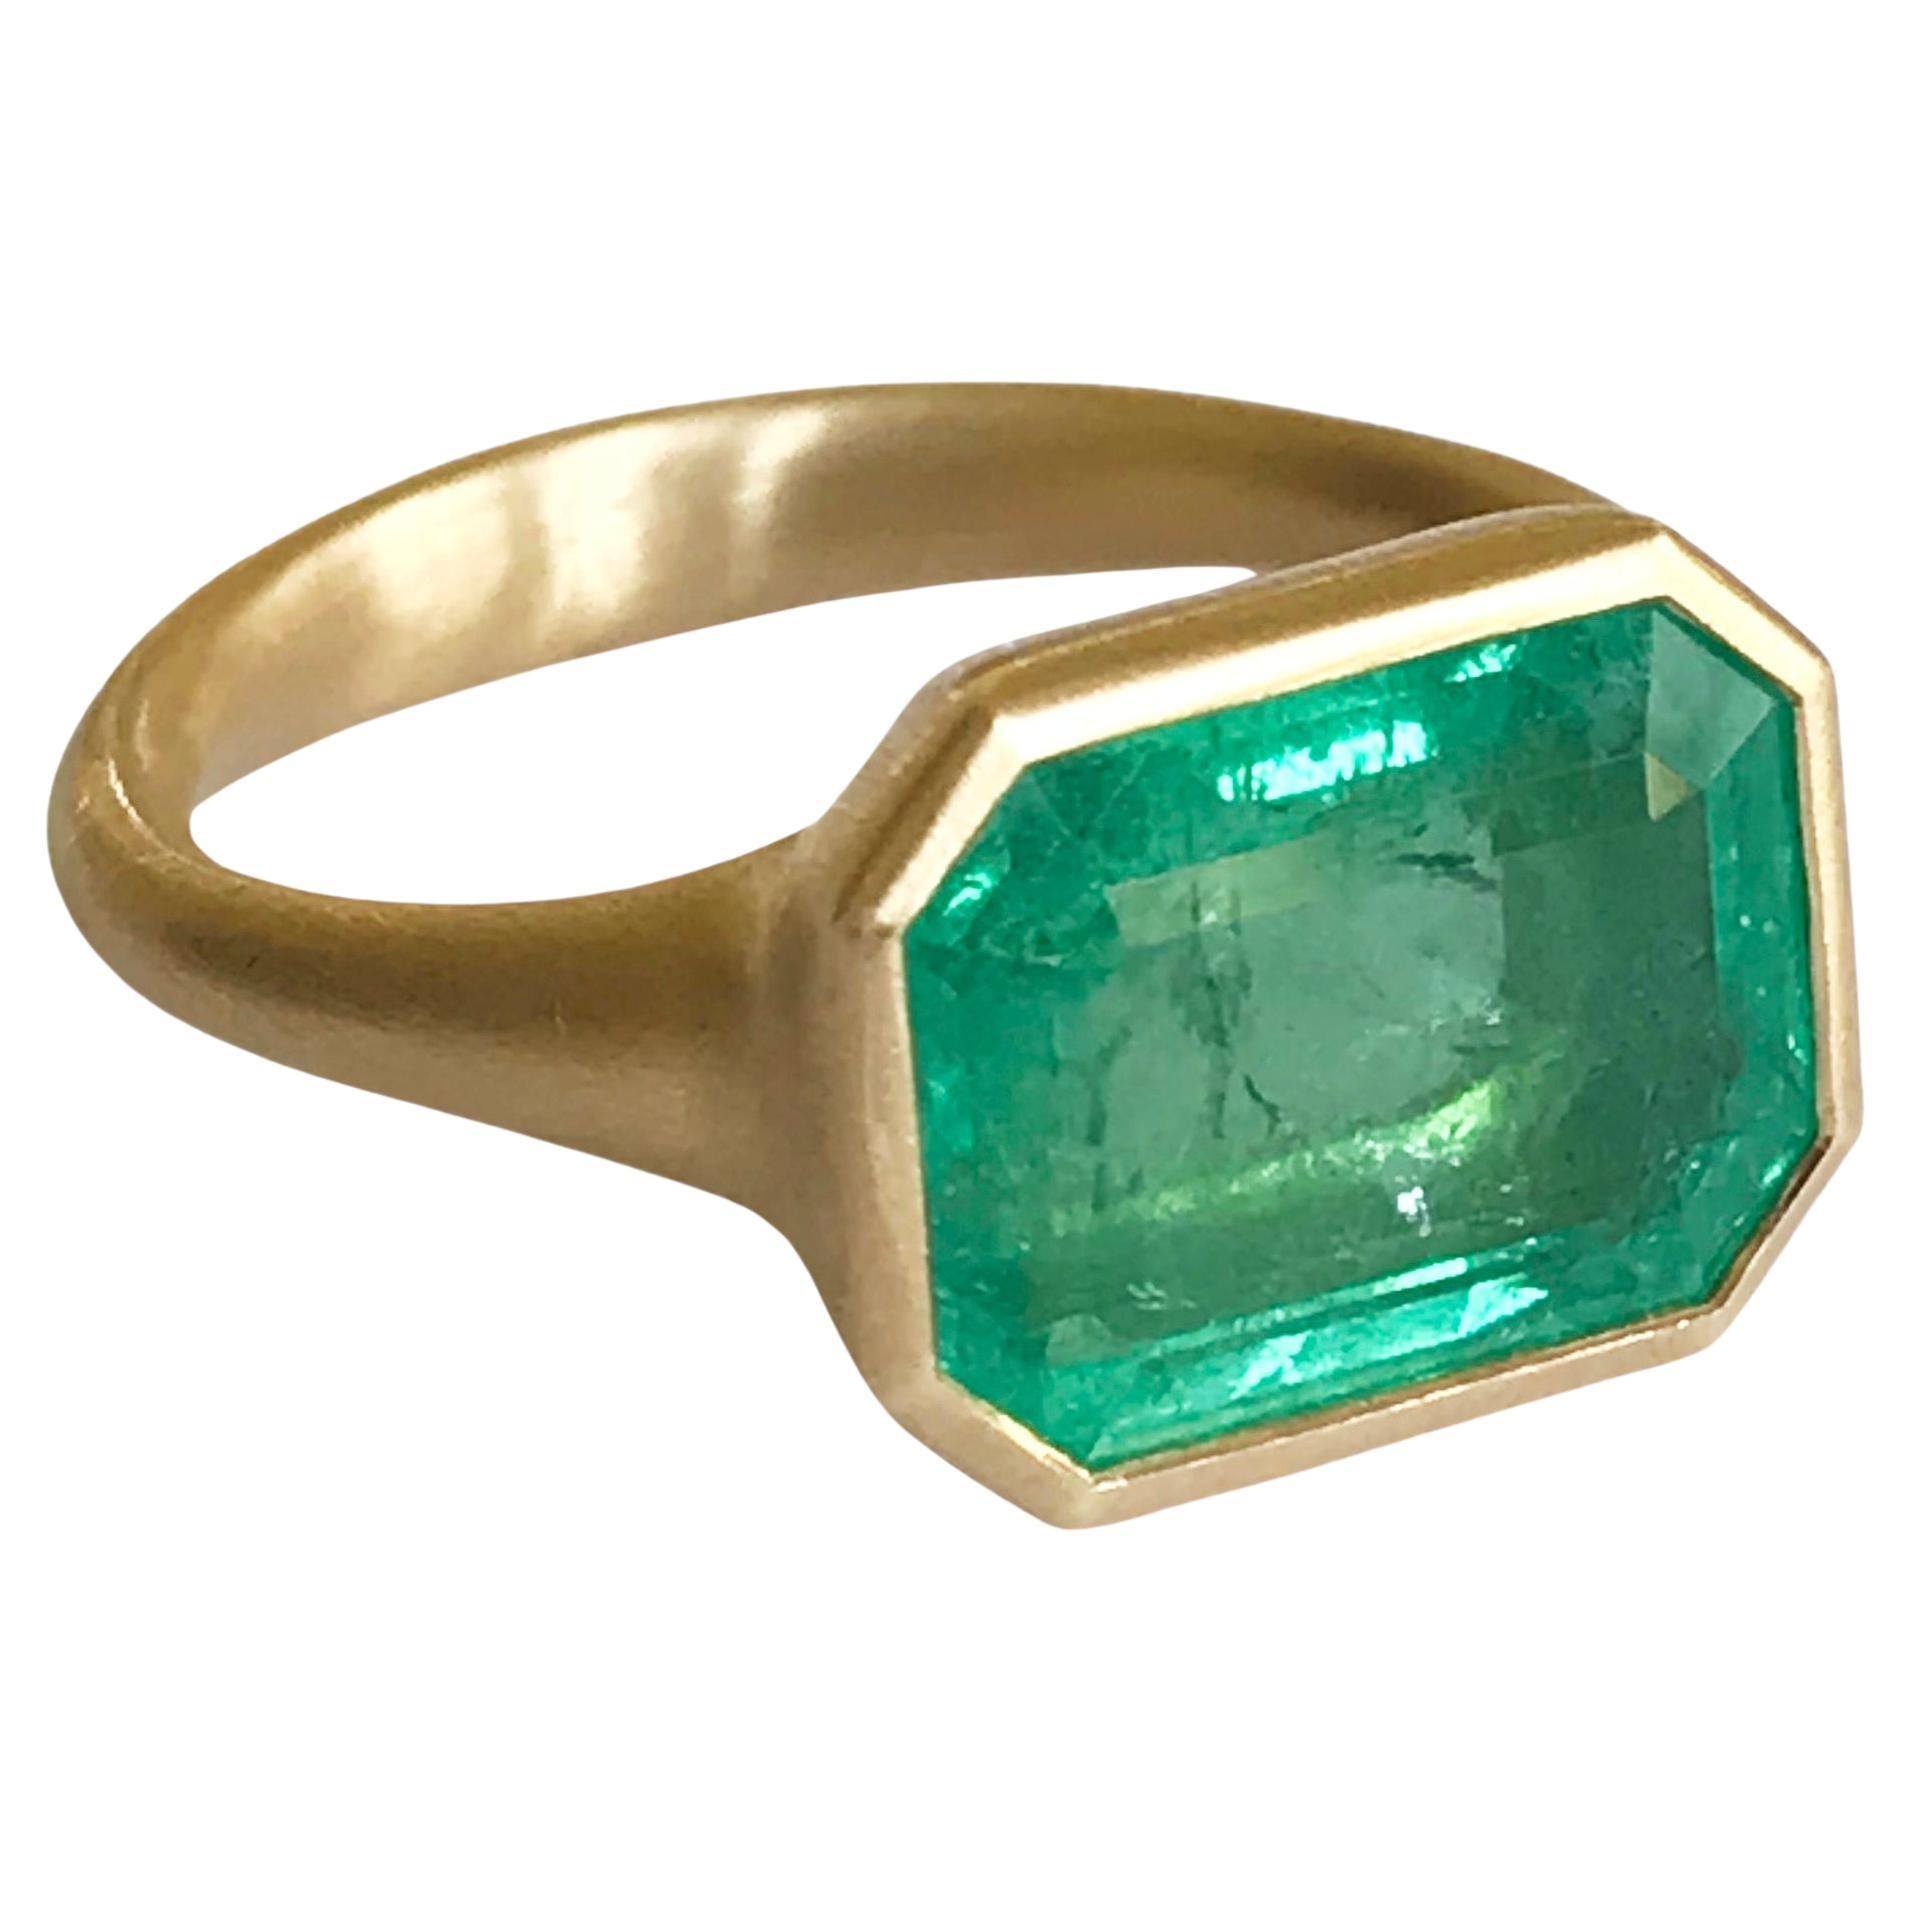 Dalben 4, 3 Carat Emerald Yellow Gold Ring